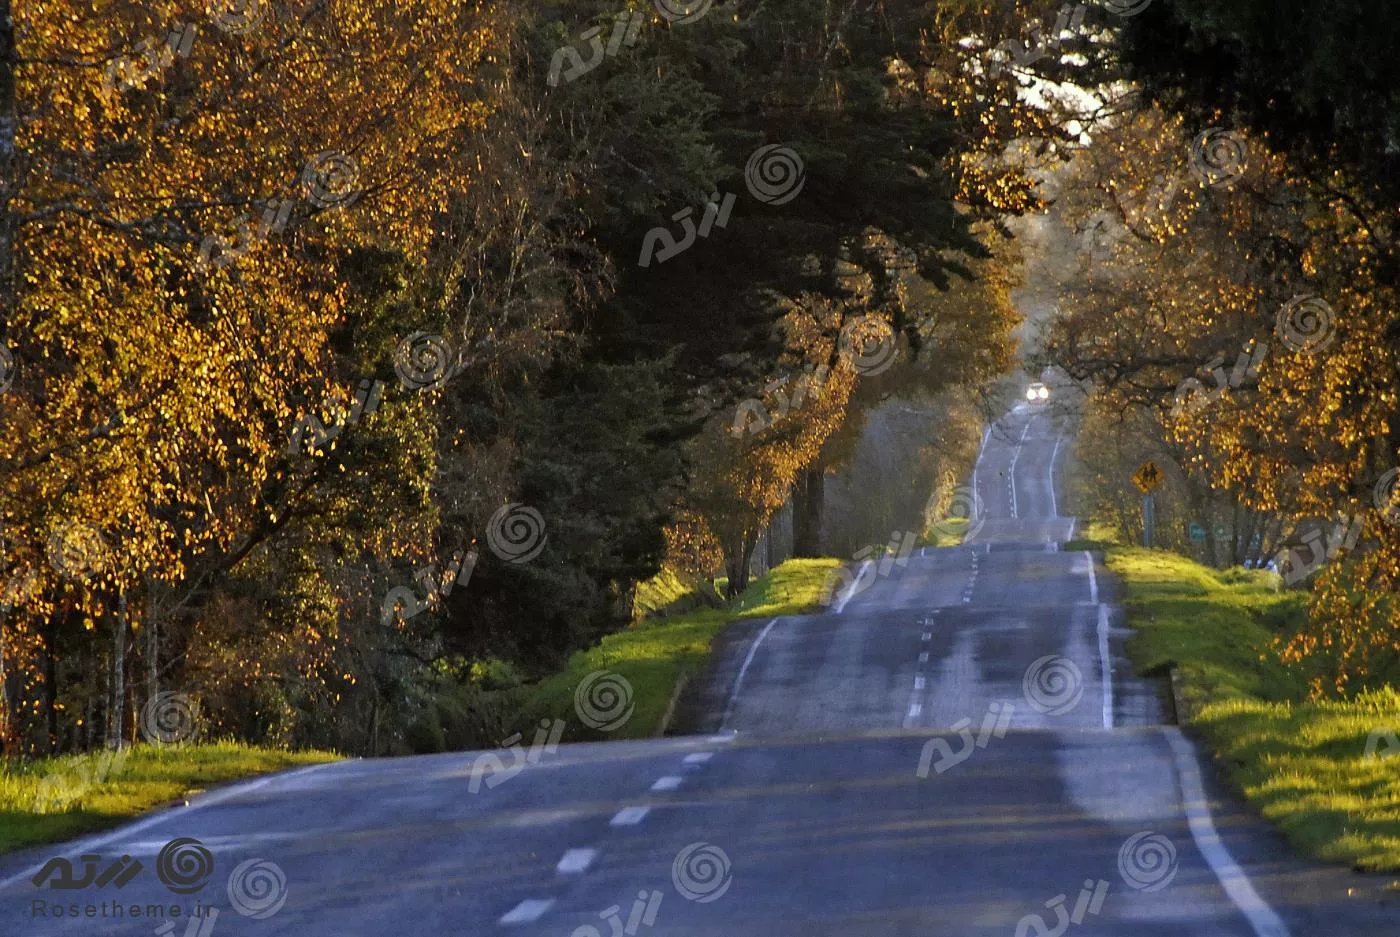 عکس با کیفیت از جاده احاطه شده با درختان پاییزی مناسب برای استفاده به عنوان تصویر زمینه 22062